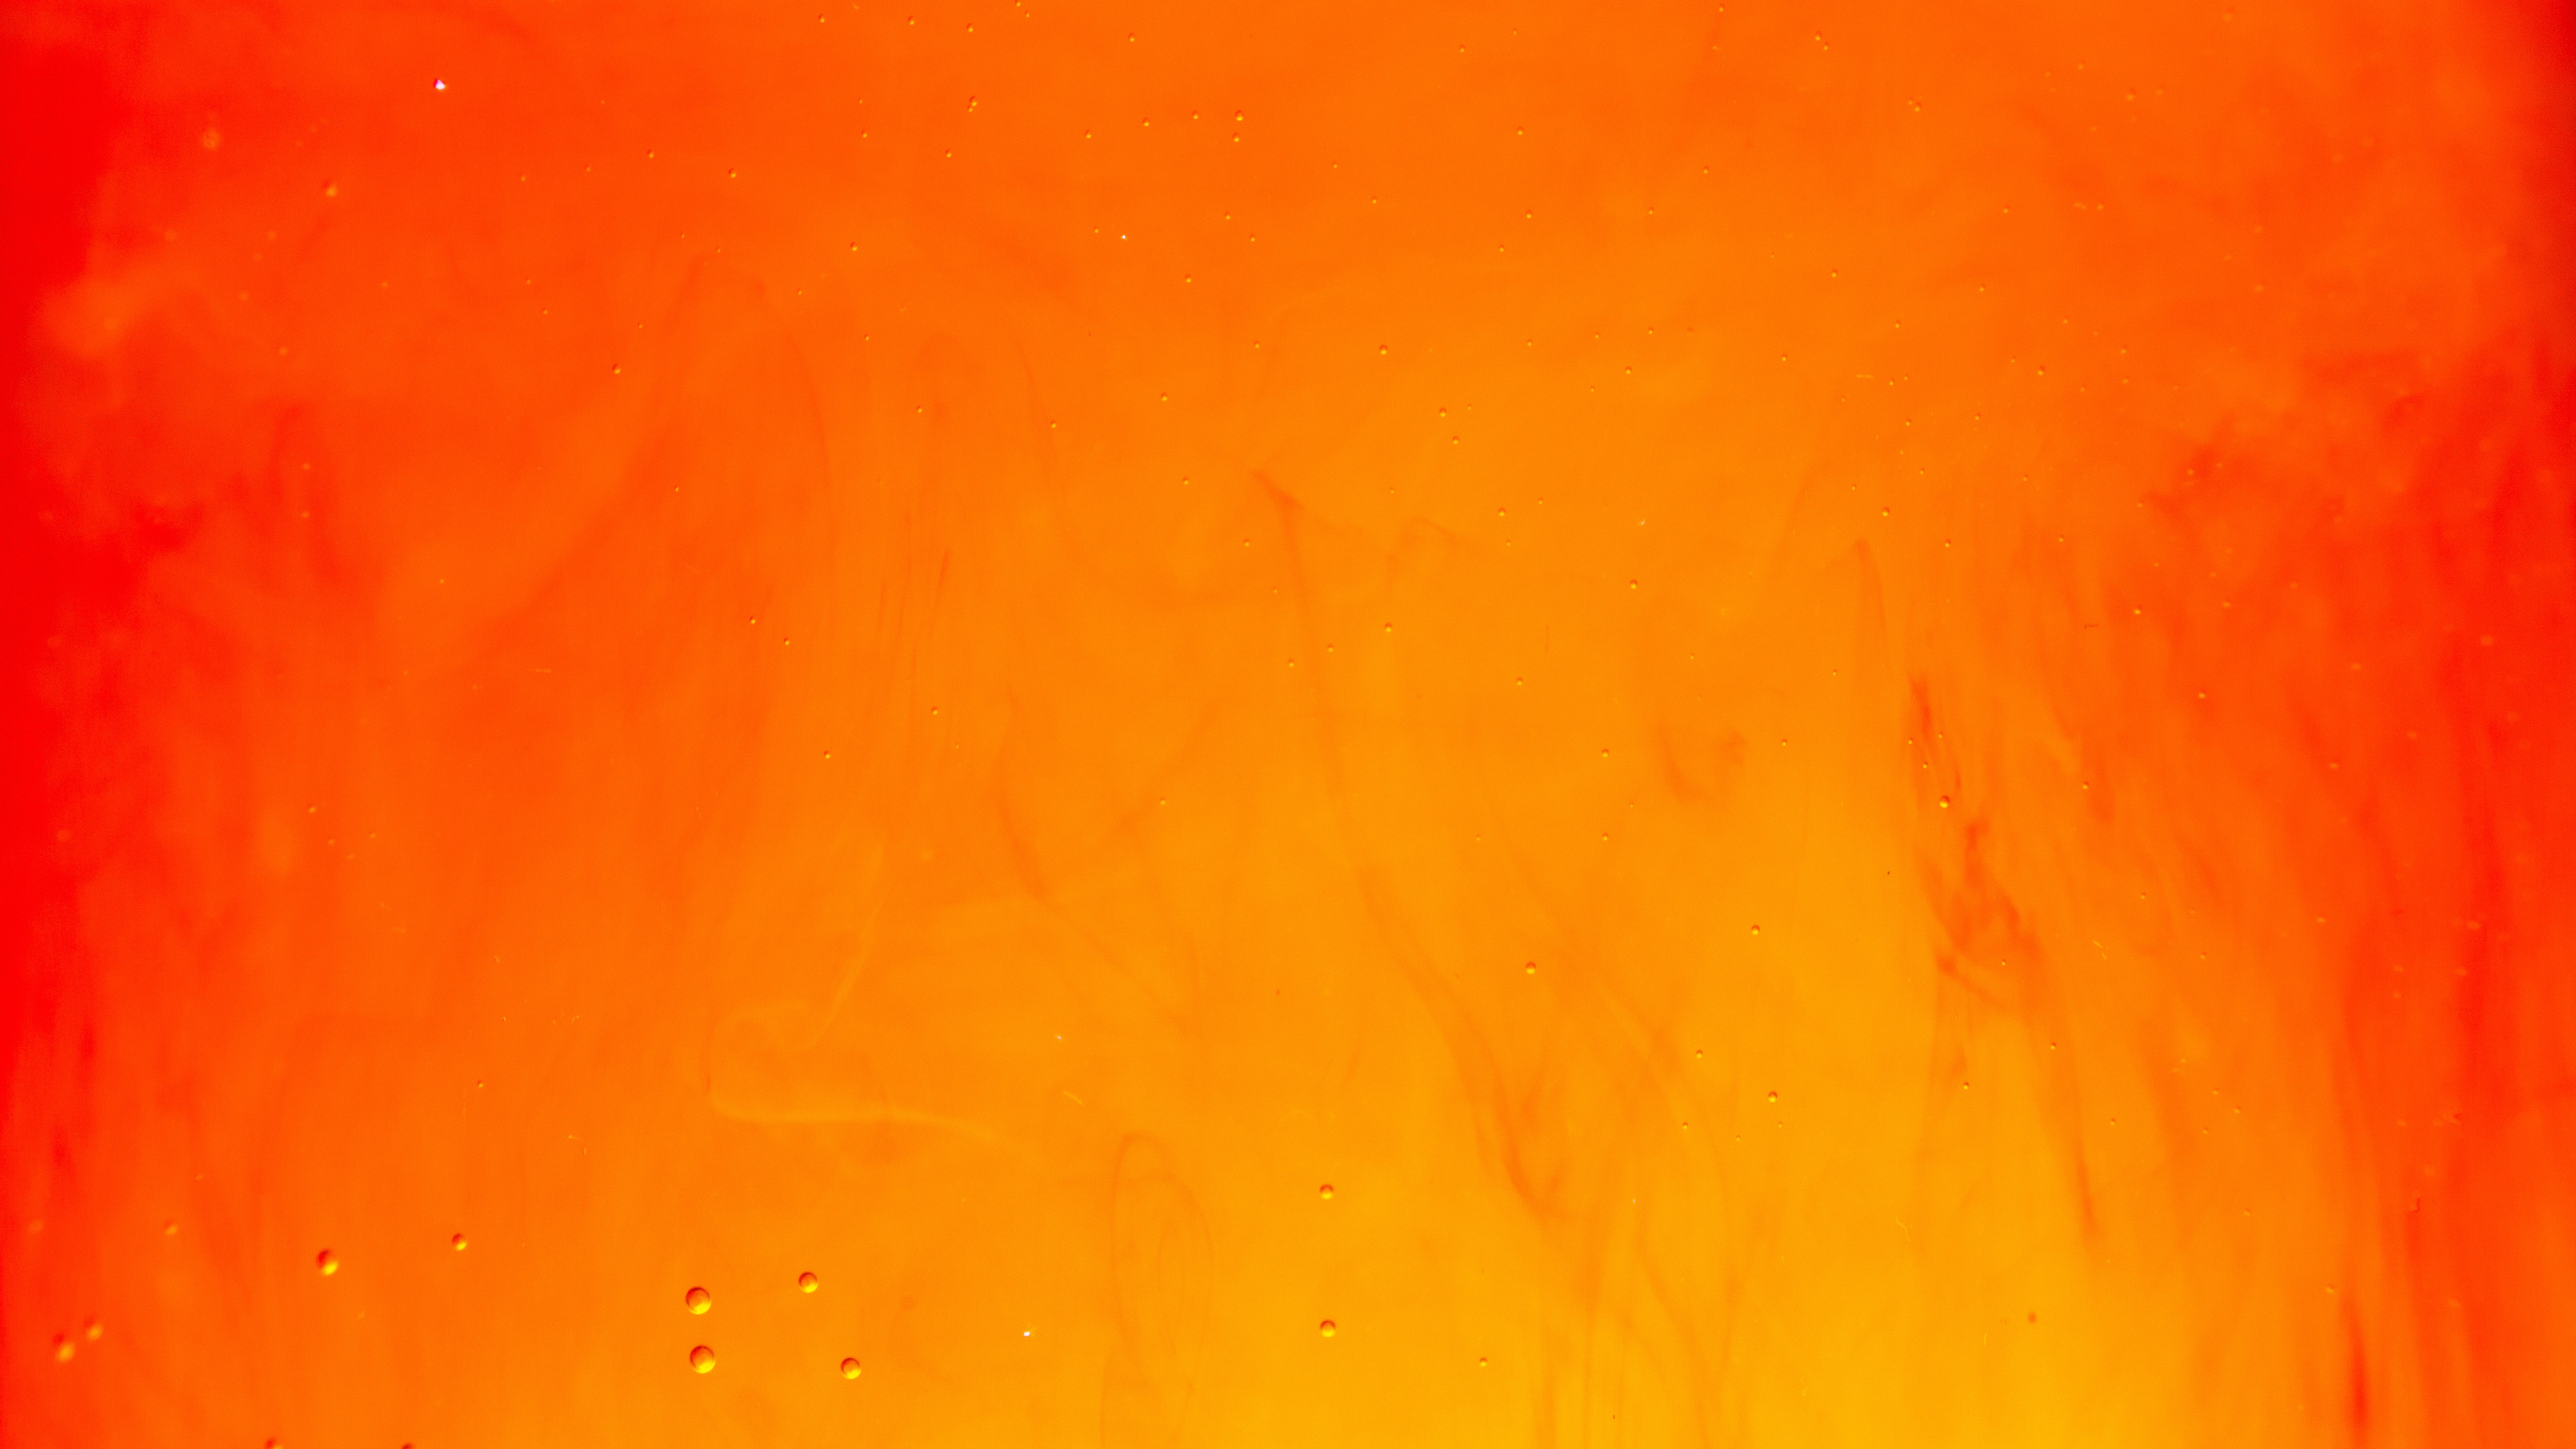 Hình nền siêu phân giải 4K của Orange do Lucas Benjamin tạo: Lucas Benjamin đã tạo ra một bộ sưu tập hình nền cam siêu phân giải 4K đẹp nhất cho máy tính của bạn. Bạn sẽ không thể cưỡng lại được vẻ đẹp tuyệt vời này. Hãy truy cập ngay để cảm nhận.